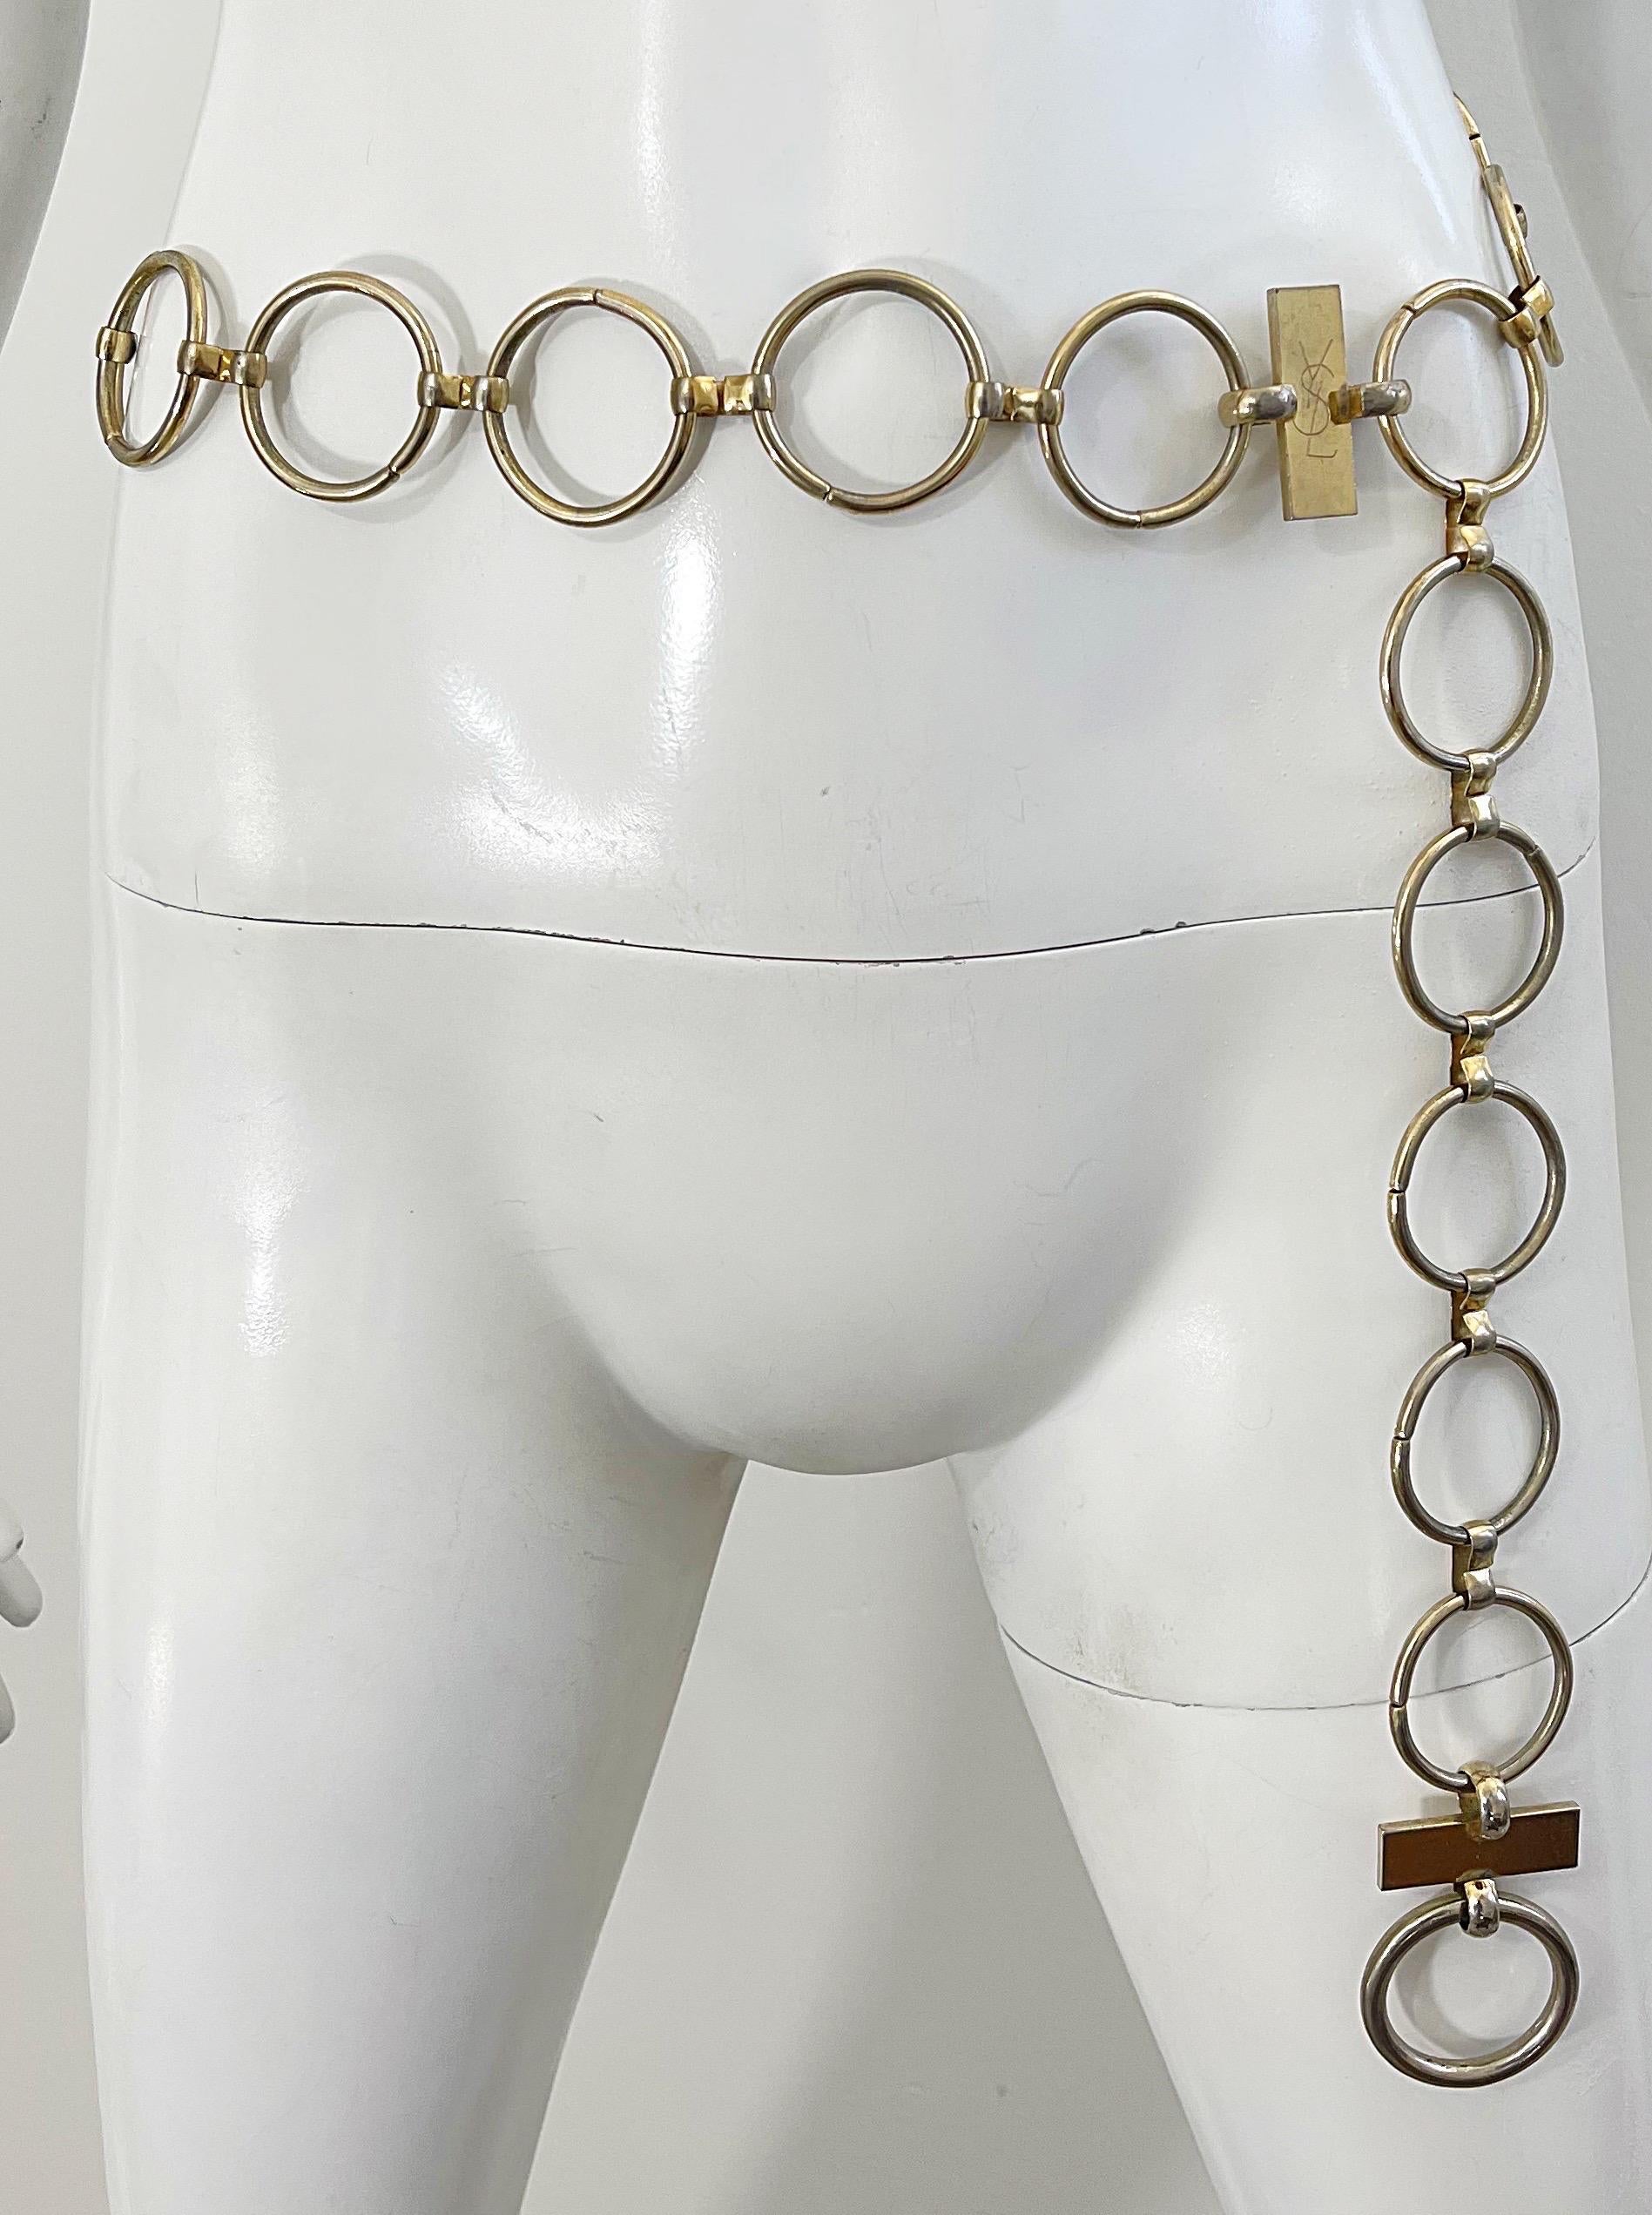 Rare YSL early 70s gold chain ring belt OR necklace ! Cette pierre précieuse rare est presque identique à celle que Veruschka portait avec la robe safari emblématique. Peut facilement passer d'une ceinture à un collier. A porter sur un débardeur, un